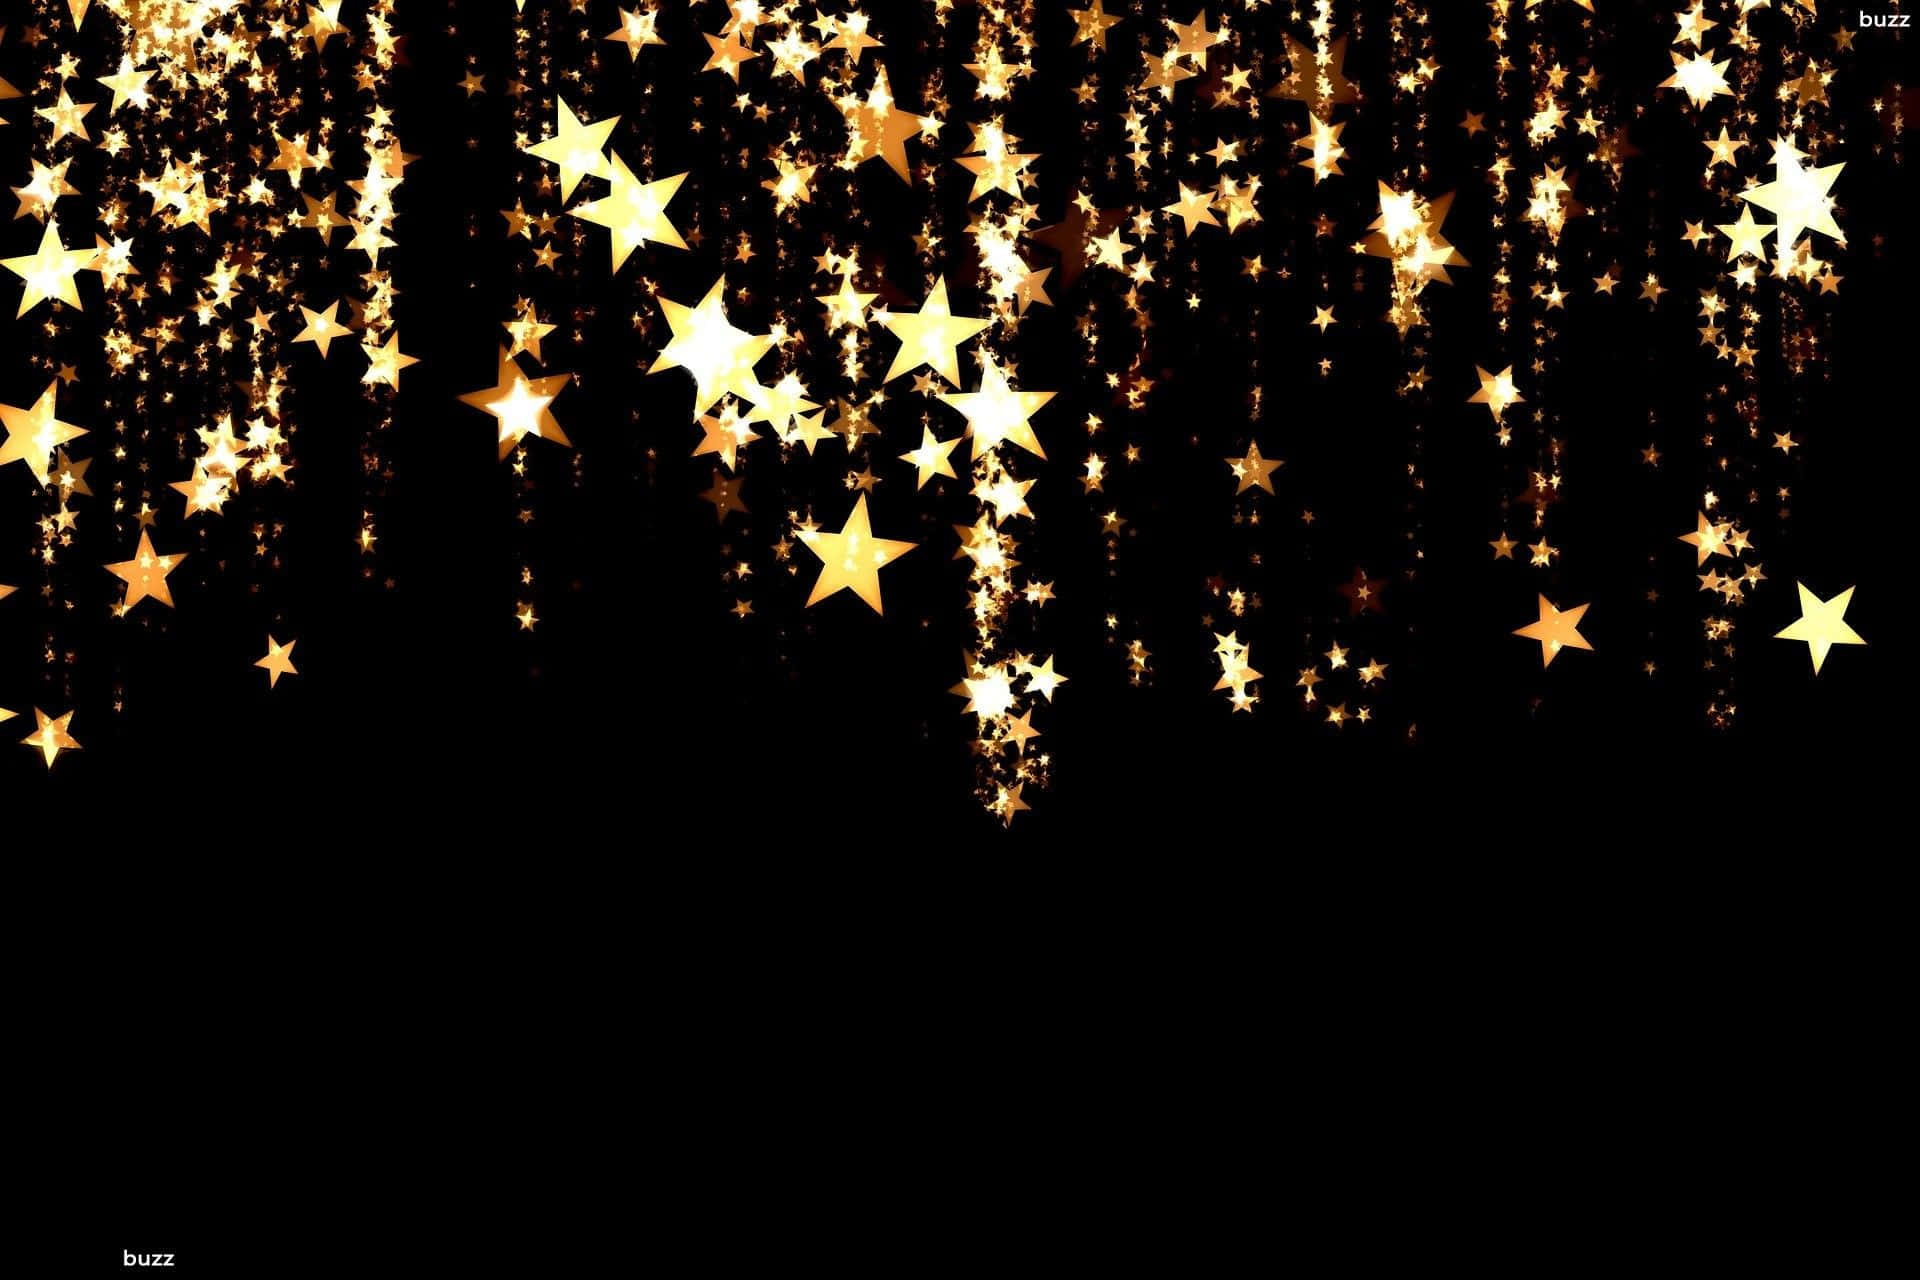 Enregn Av Gyllene Stjärnor Kaskadfaller Genom Nattens Himmel Och Lyser Starkt I Mörkret. Wallpaper